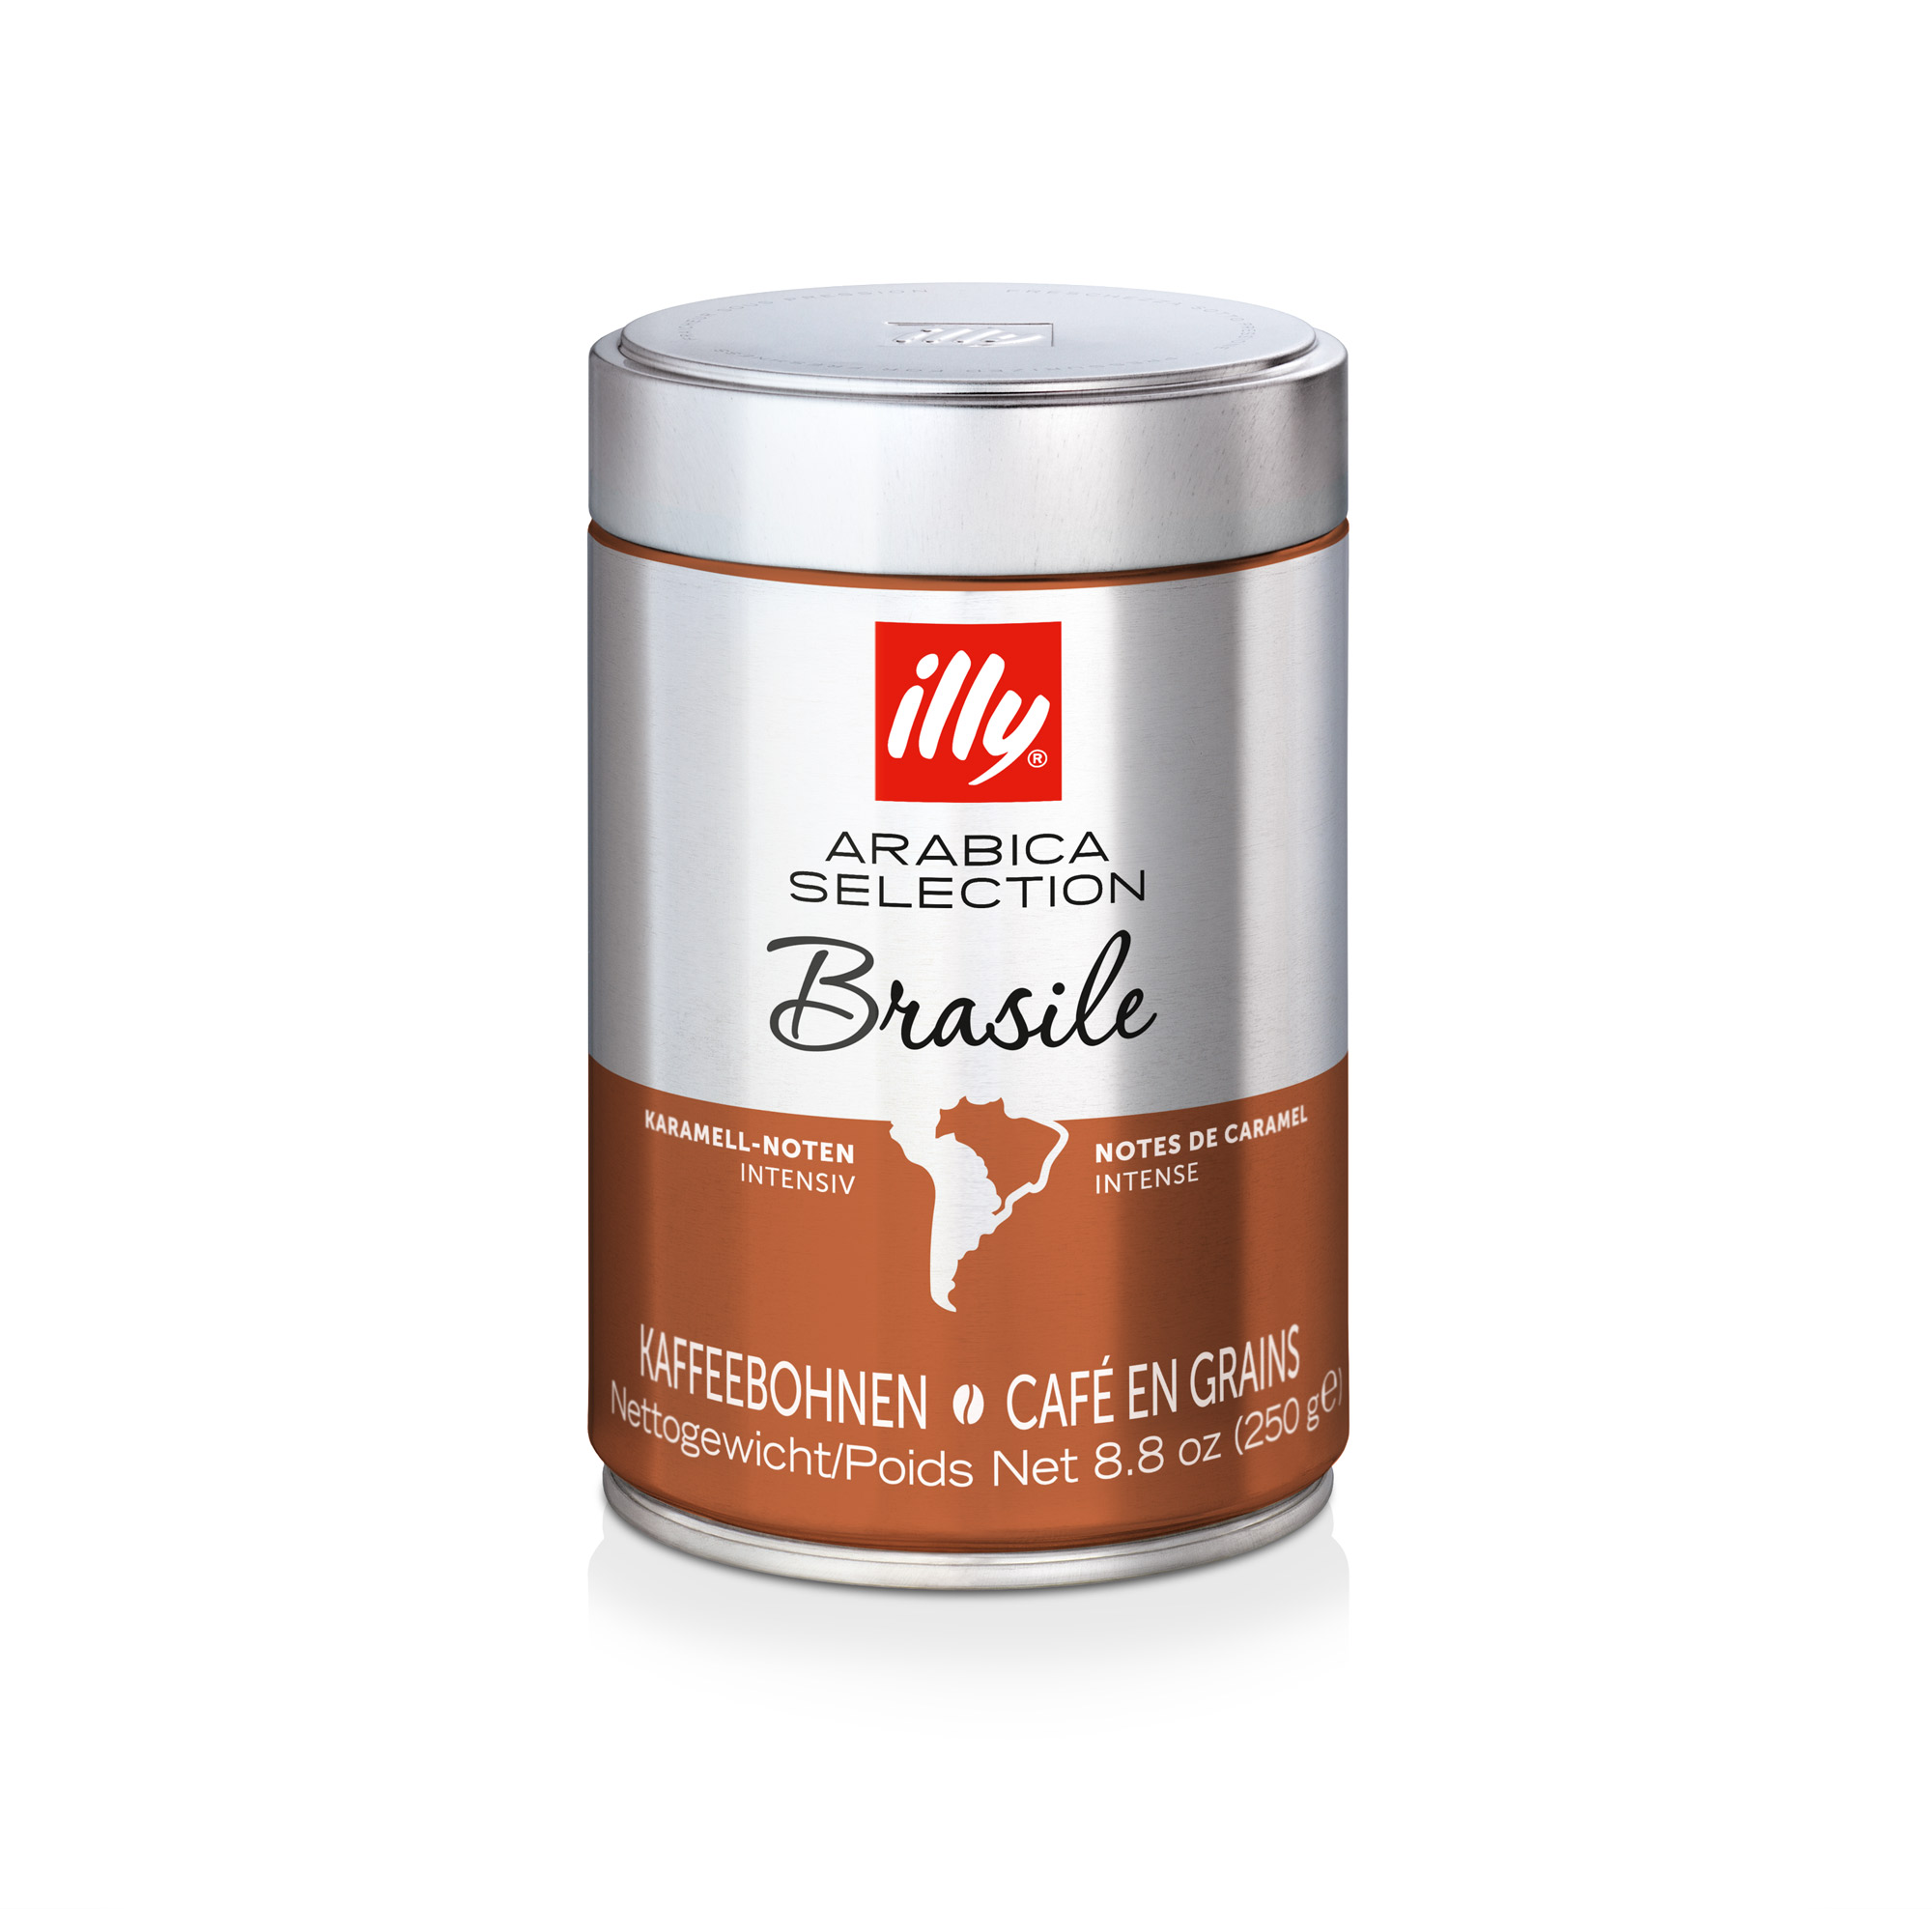 Espressobohnen der Arabica Selection aus Brasilien